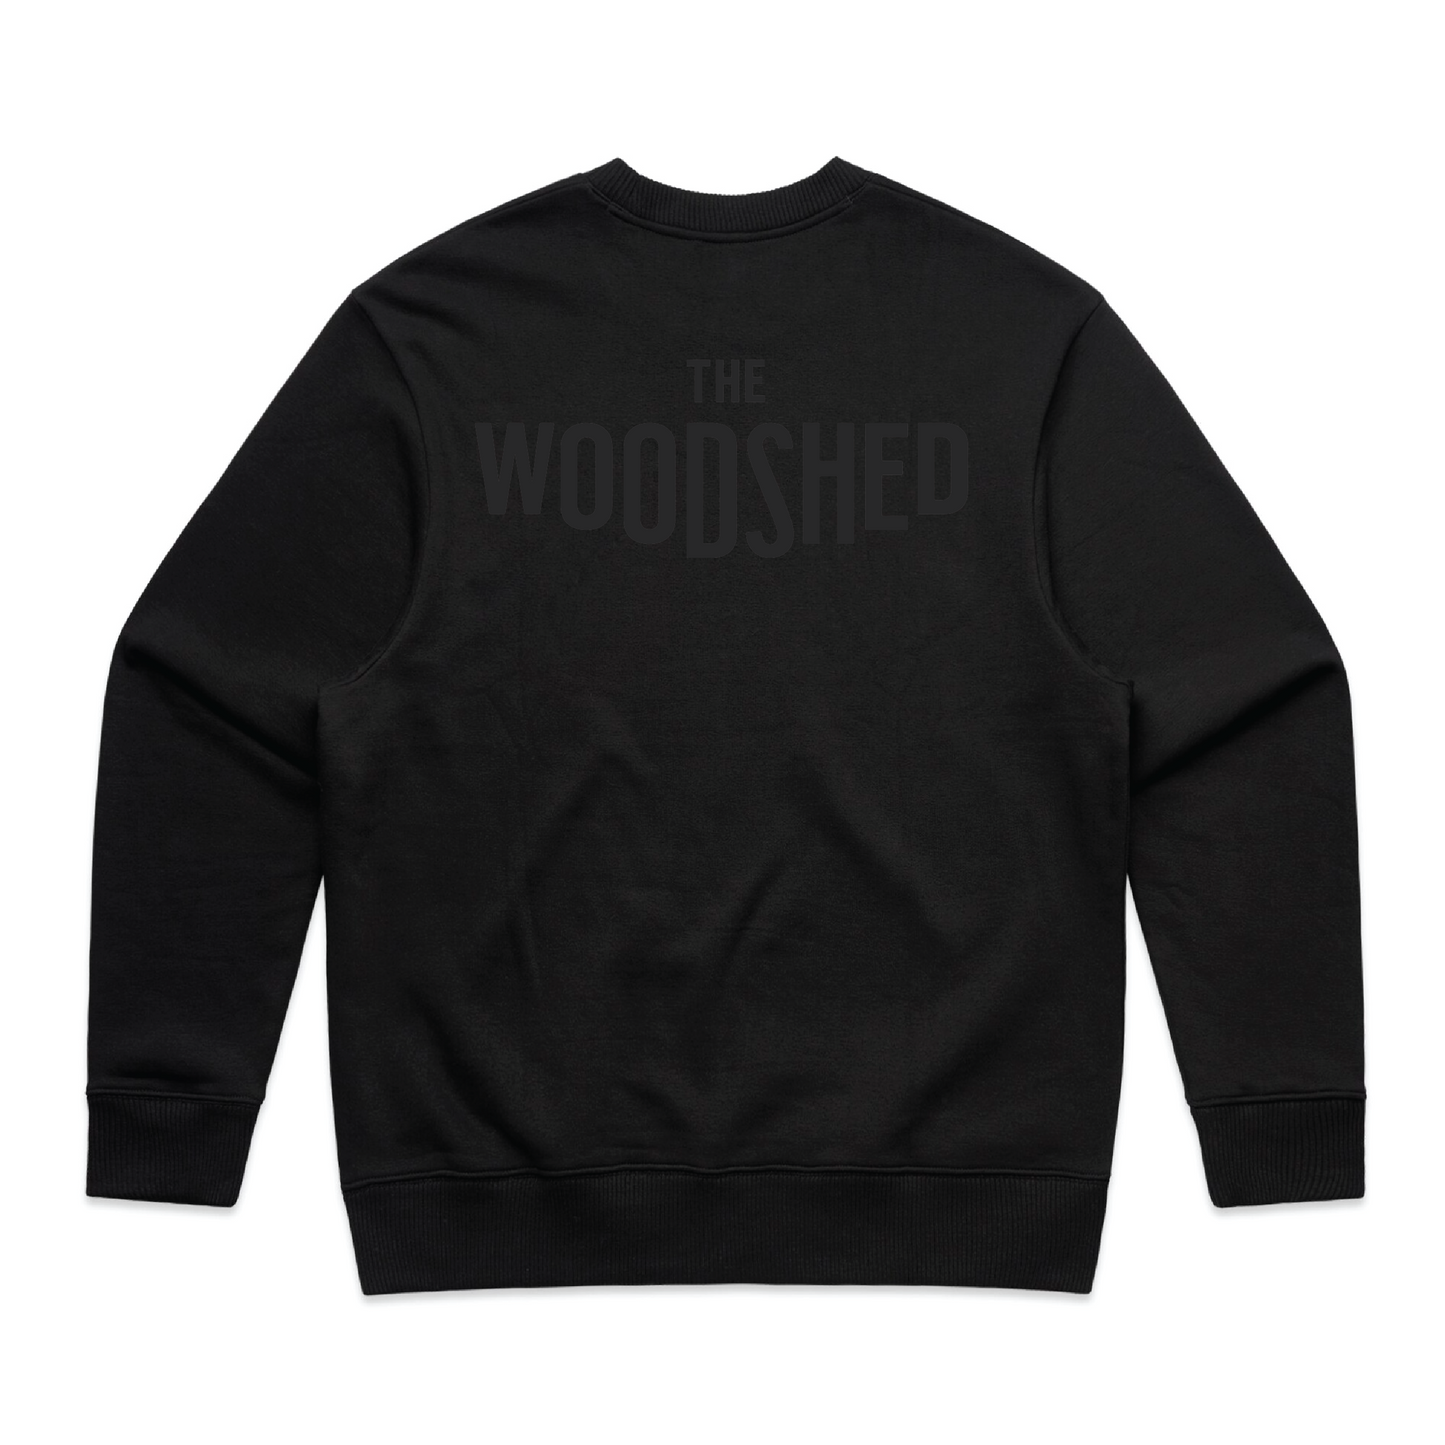 The Woodshed Crew Neck - Black